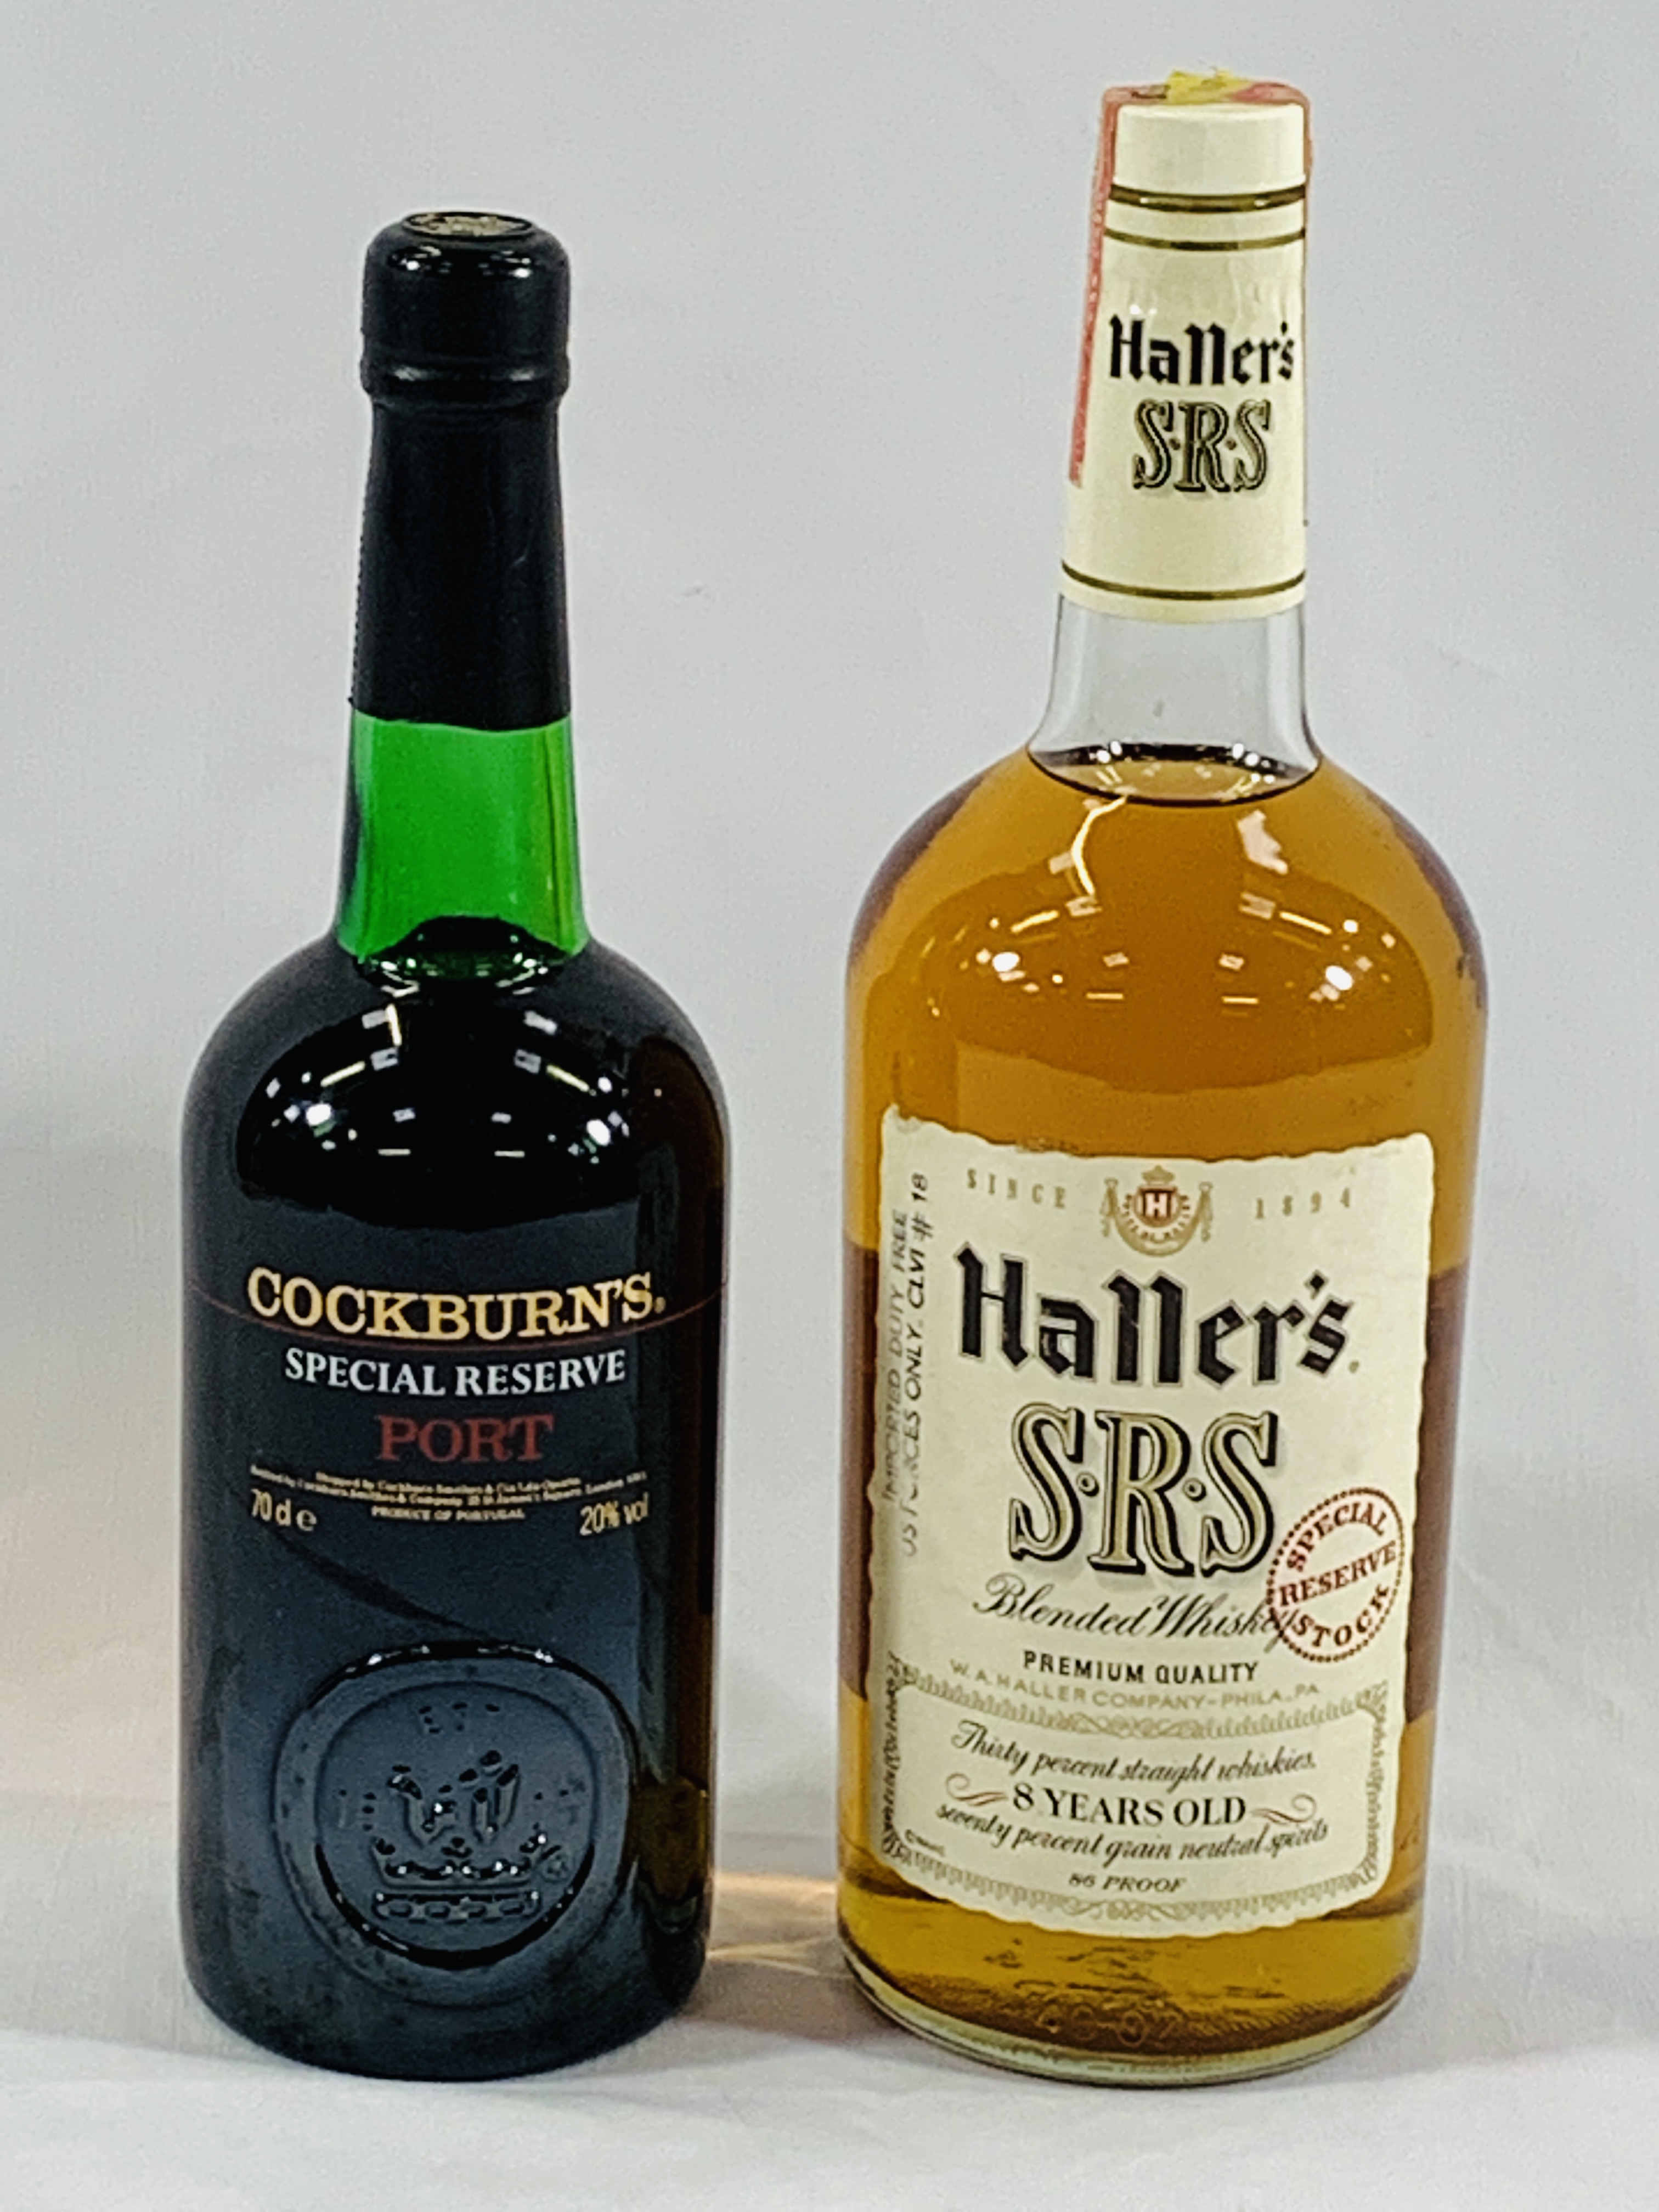 A bottle of Haller's whisky together with a bottle of Cockburn's port